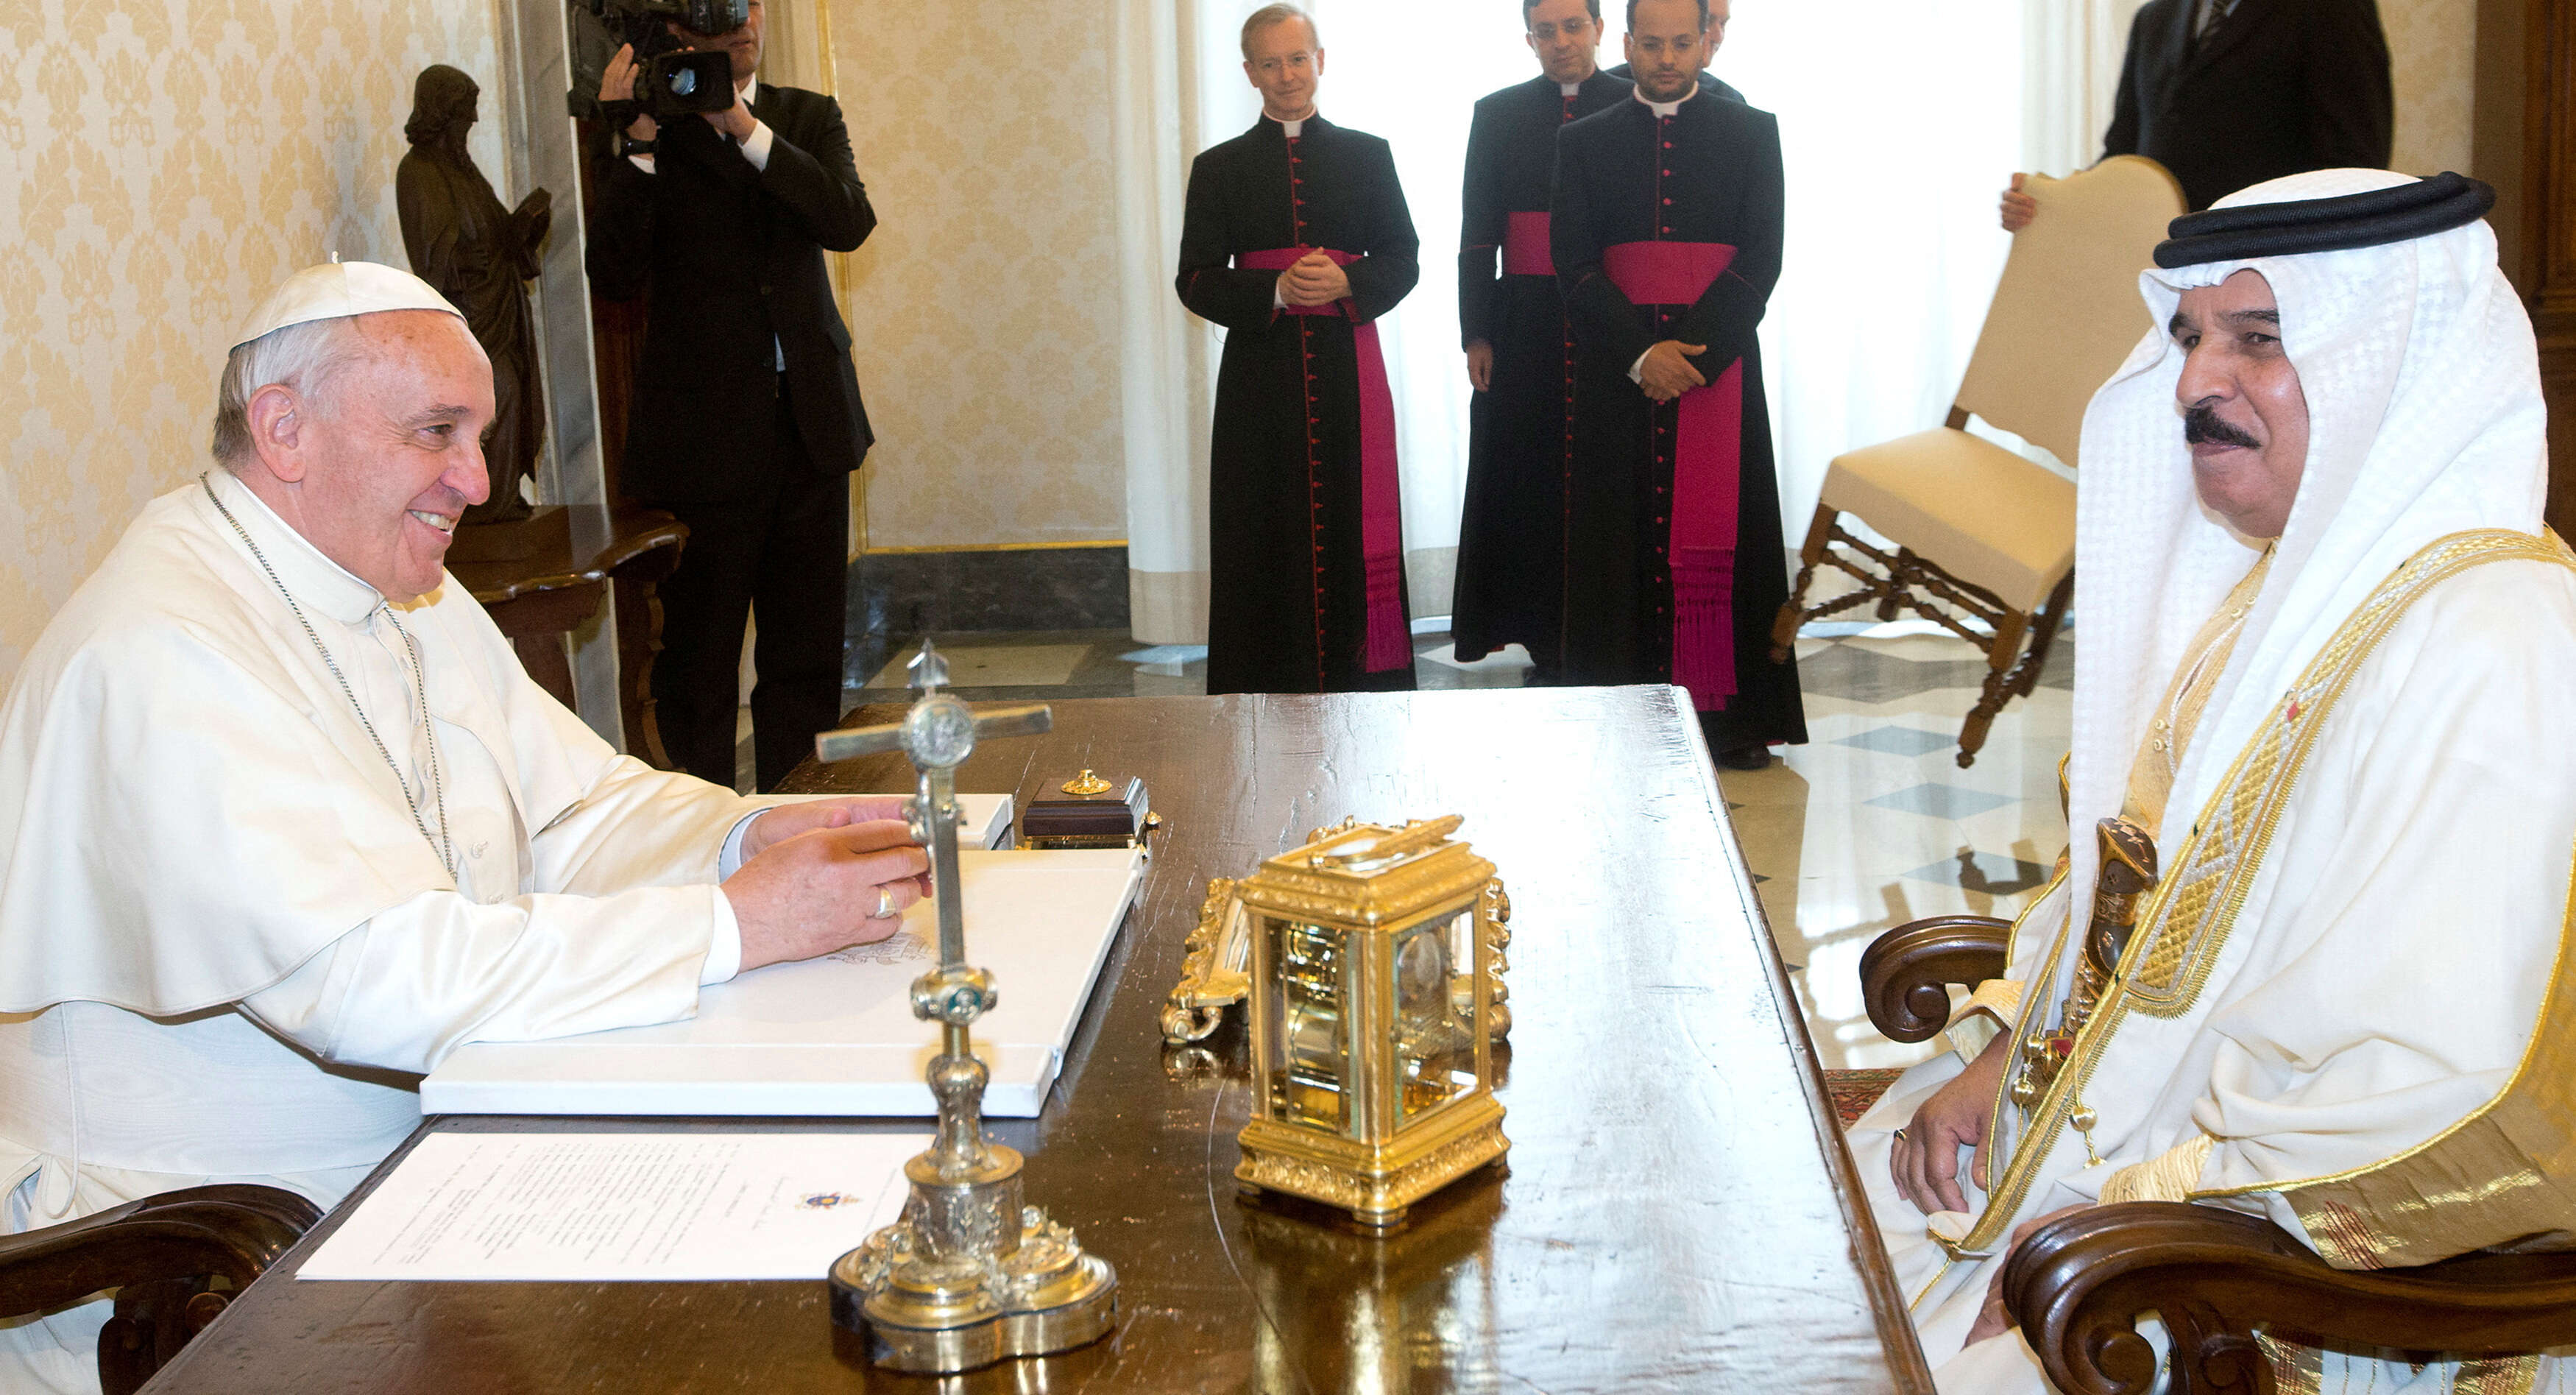 يختتم البابا زيارته الأحد بصلاة مع رجال الدين الكاثوليك في كنيسة القلب الأقدس في المنامة.